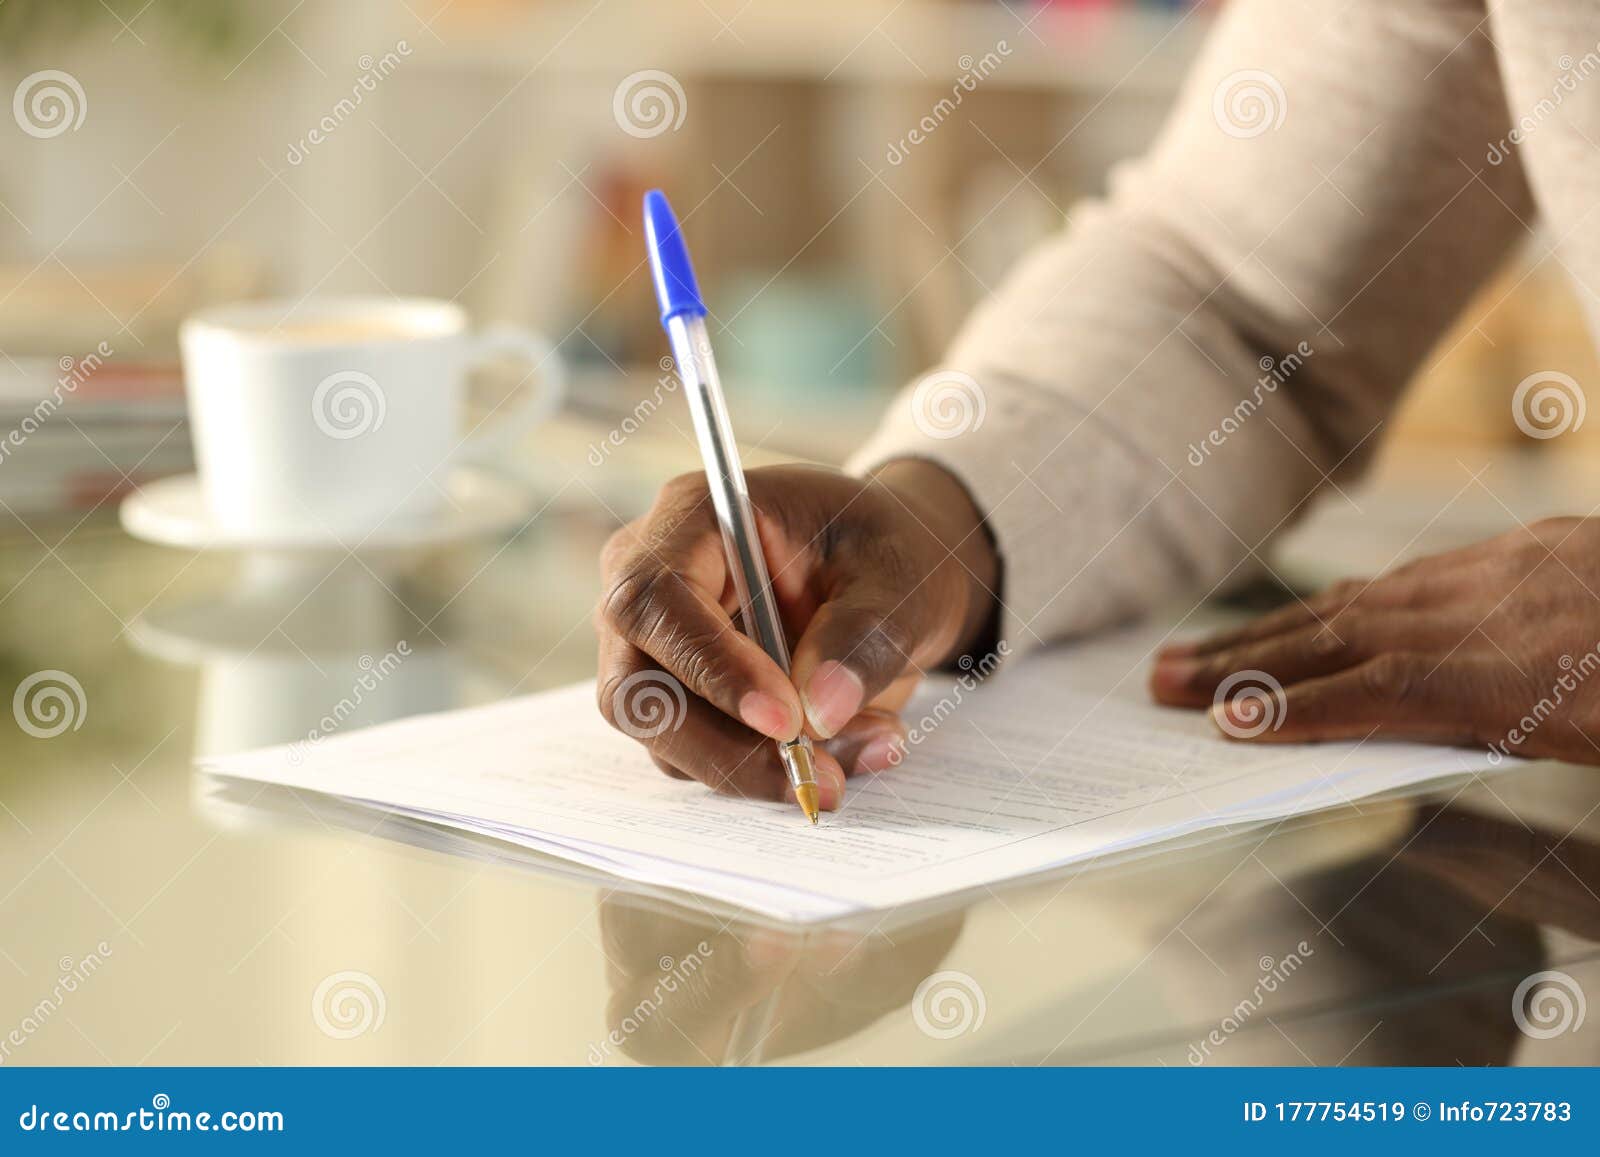 black man hands filling out form on a desk